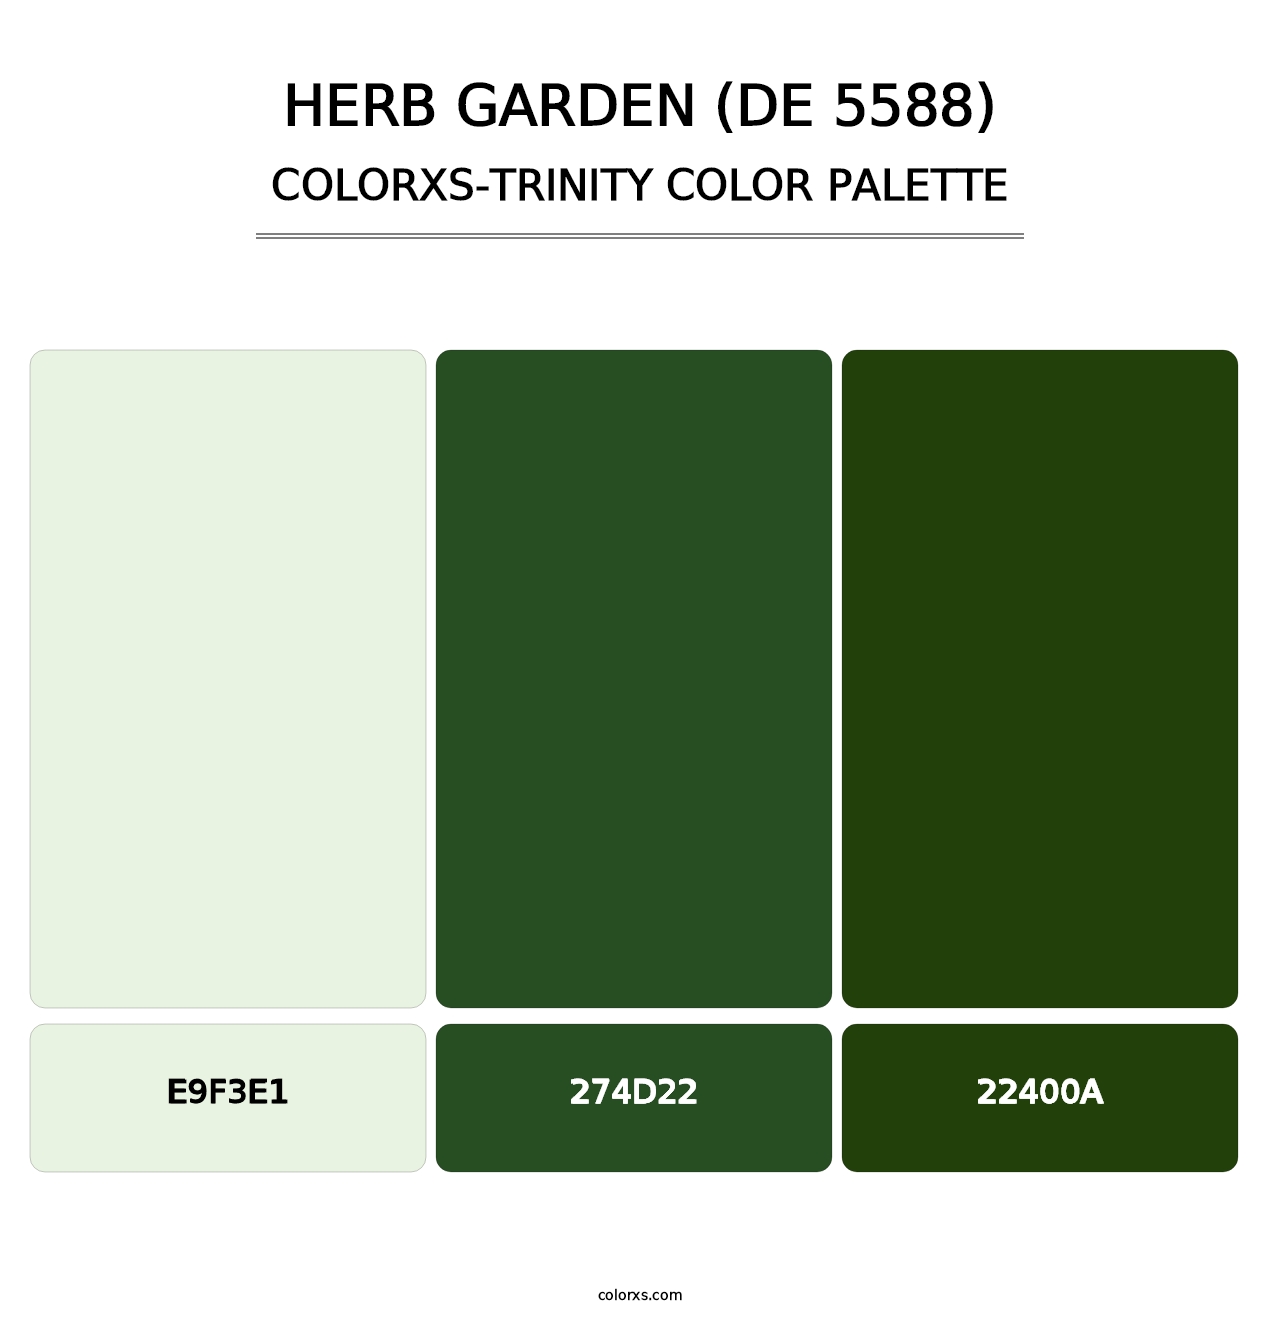 Herb Garden (DE 5588) - Colorxs Trinity Palette